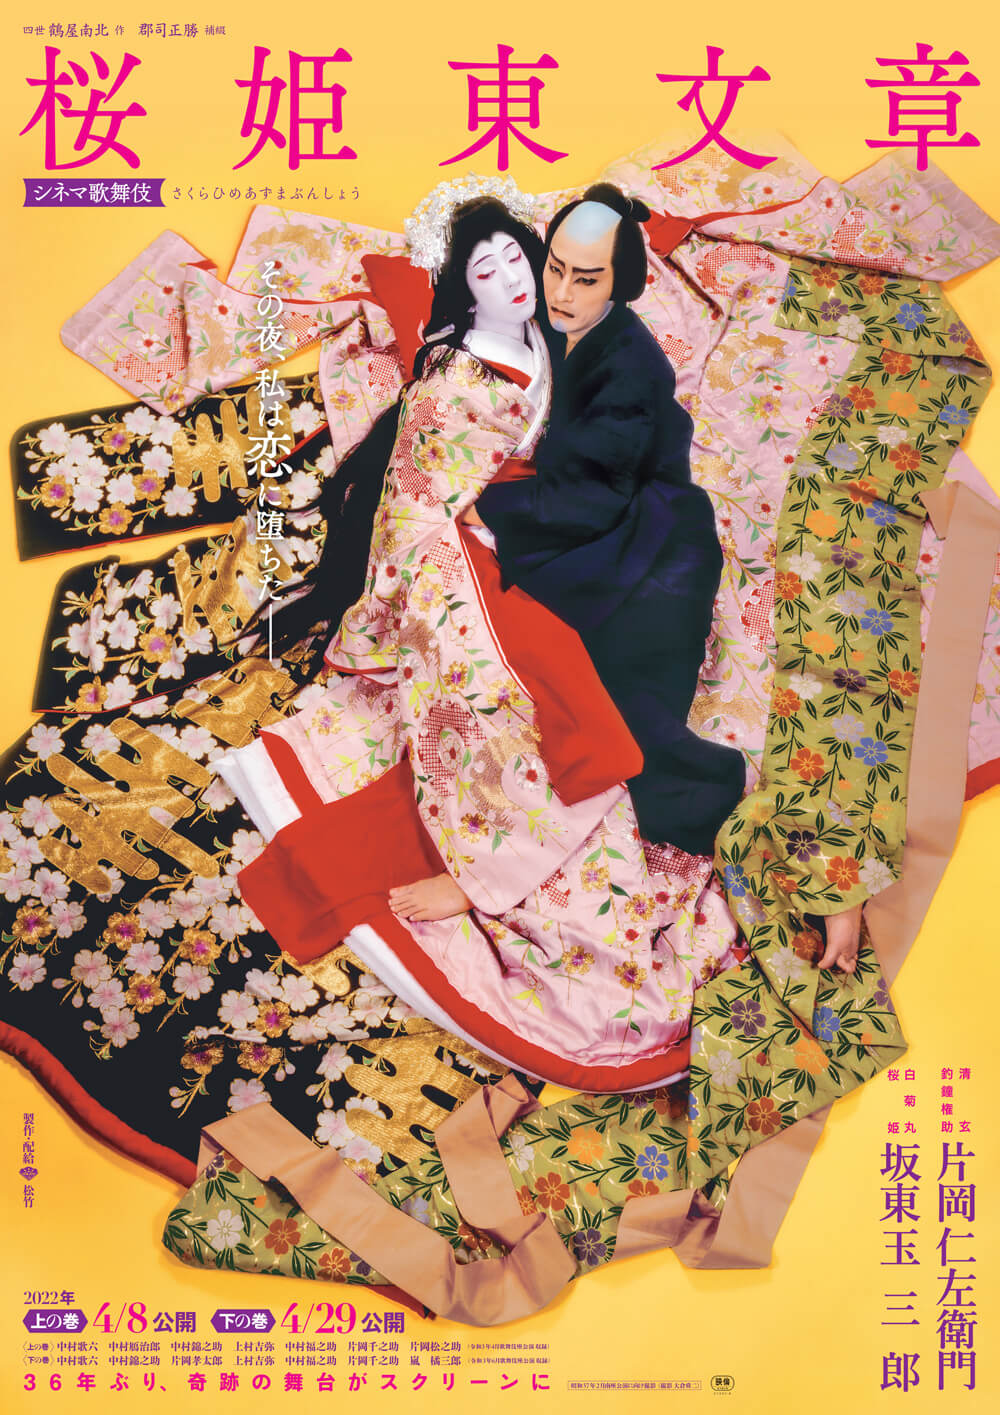 シネマ歌舞伎『桜姫東文章』割引キャンペーンのお知らせ